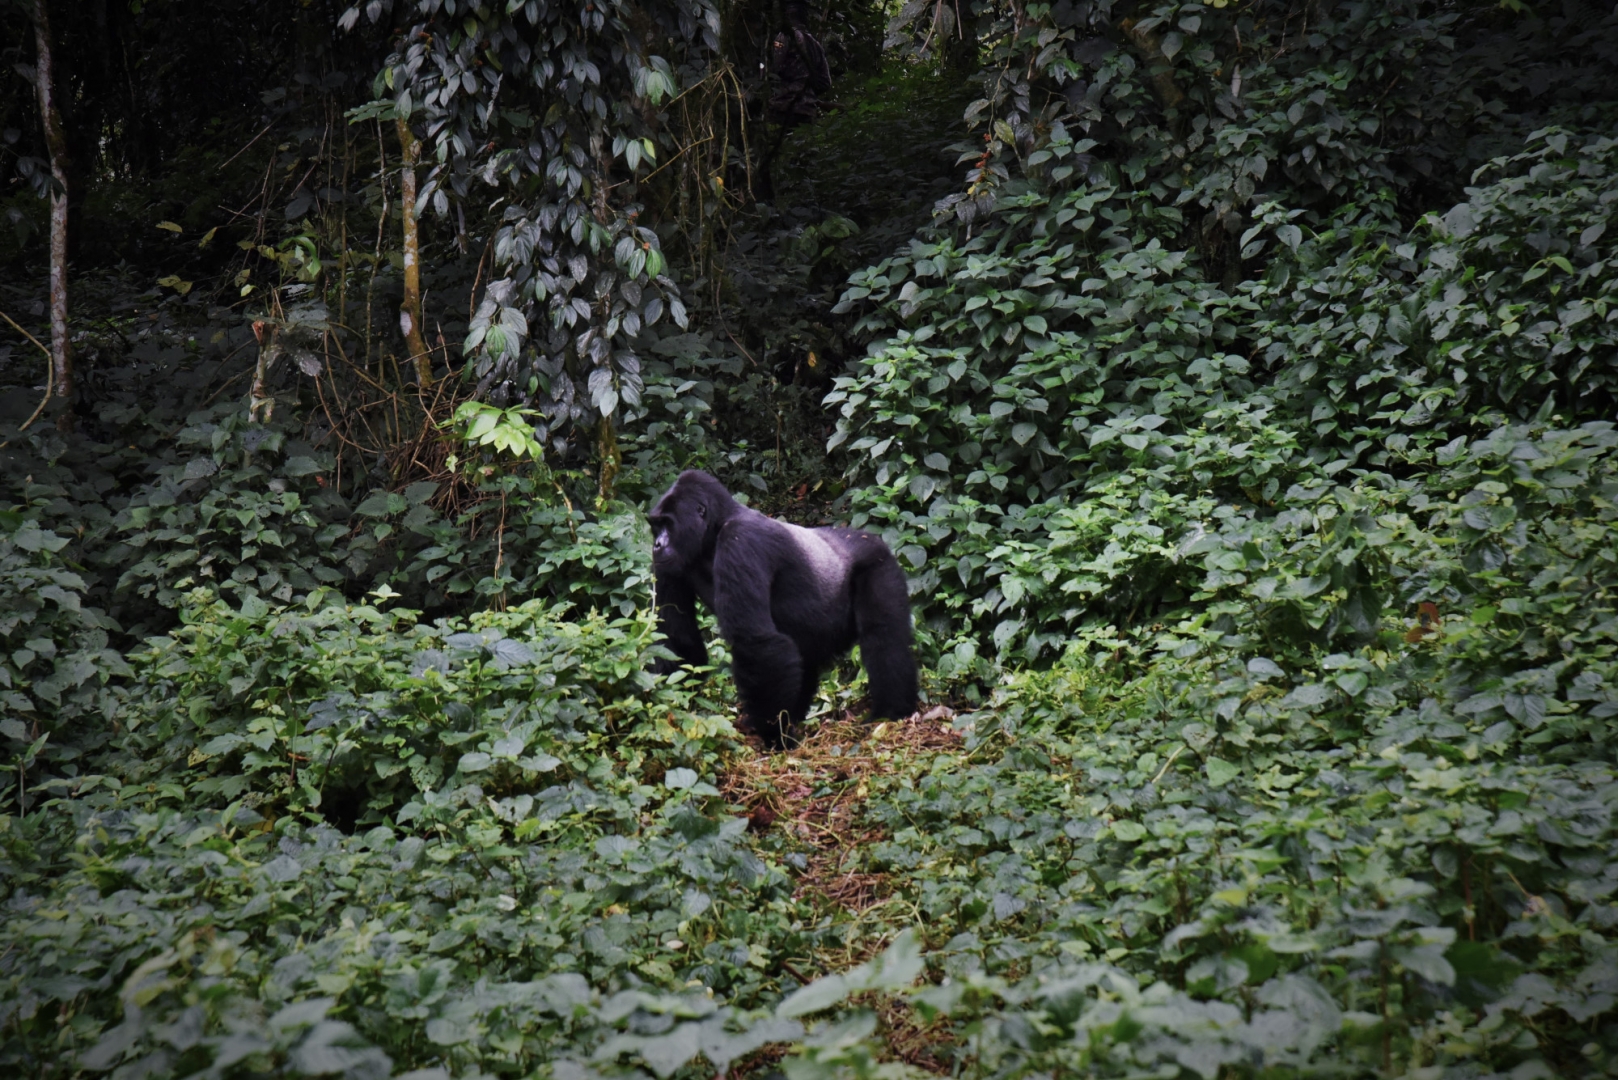 Группы горилл, проживающих в низинах, мигрируют меньше, чем группы из более высоких регионов из-за доступности сбора фруктов